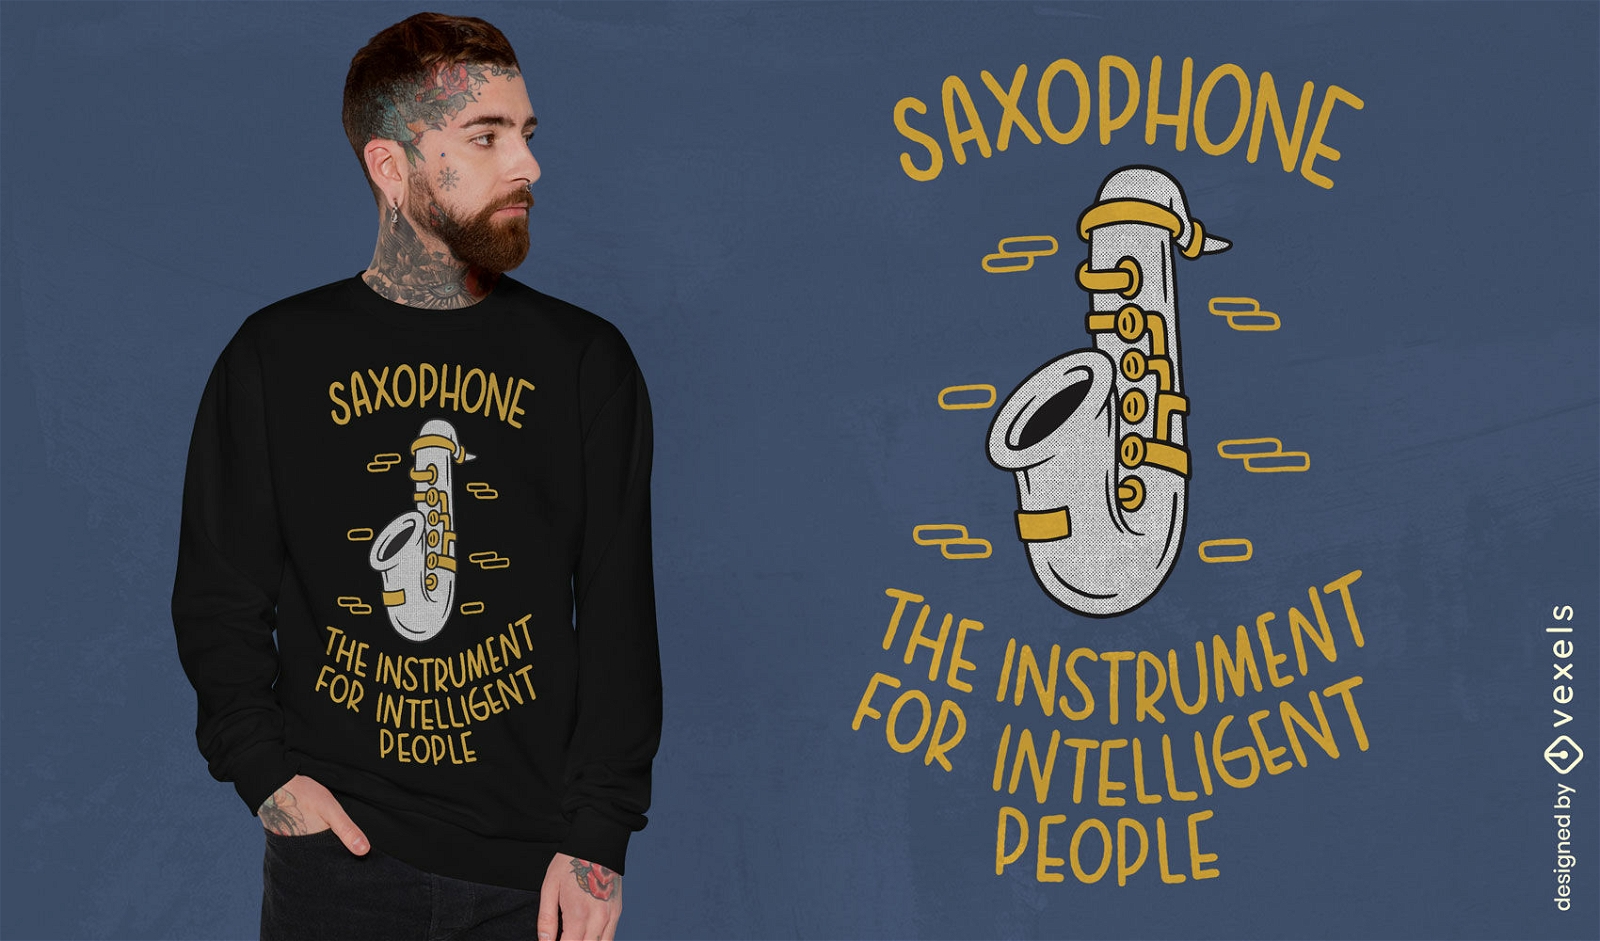 Saxophone musical instrument t-shirt design